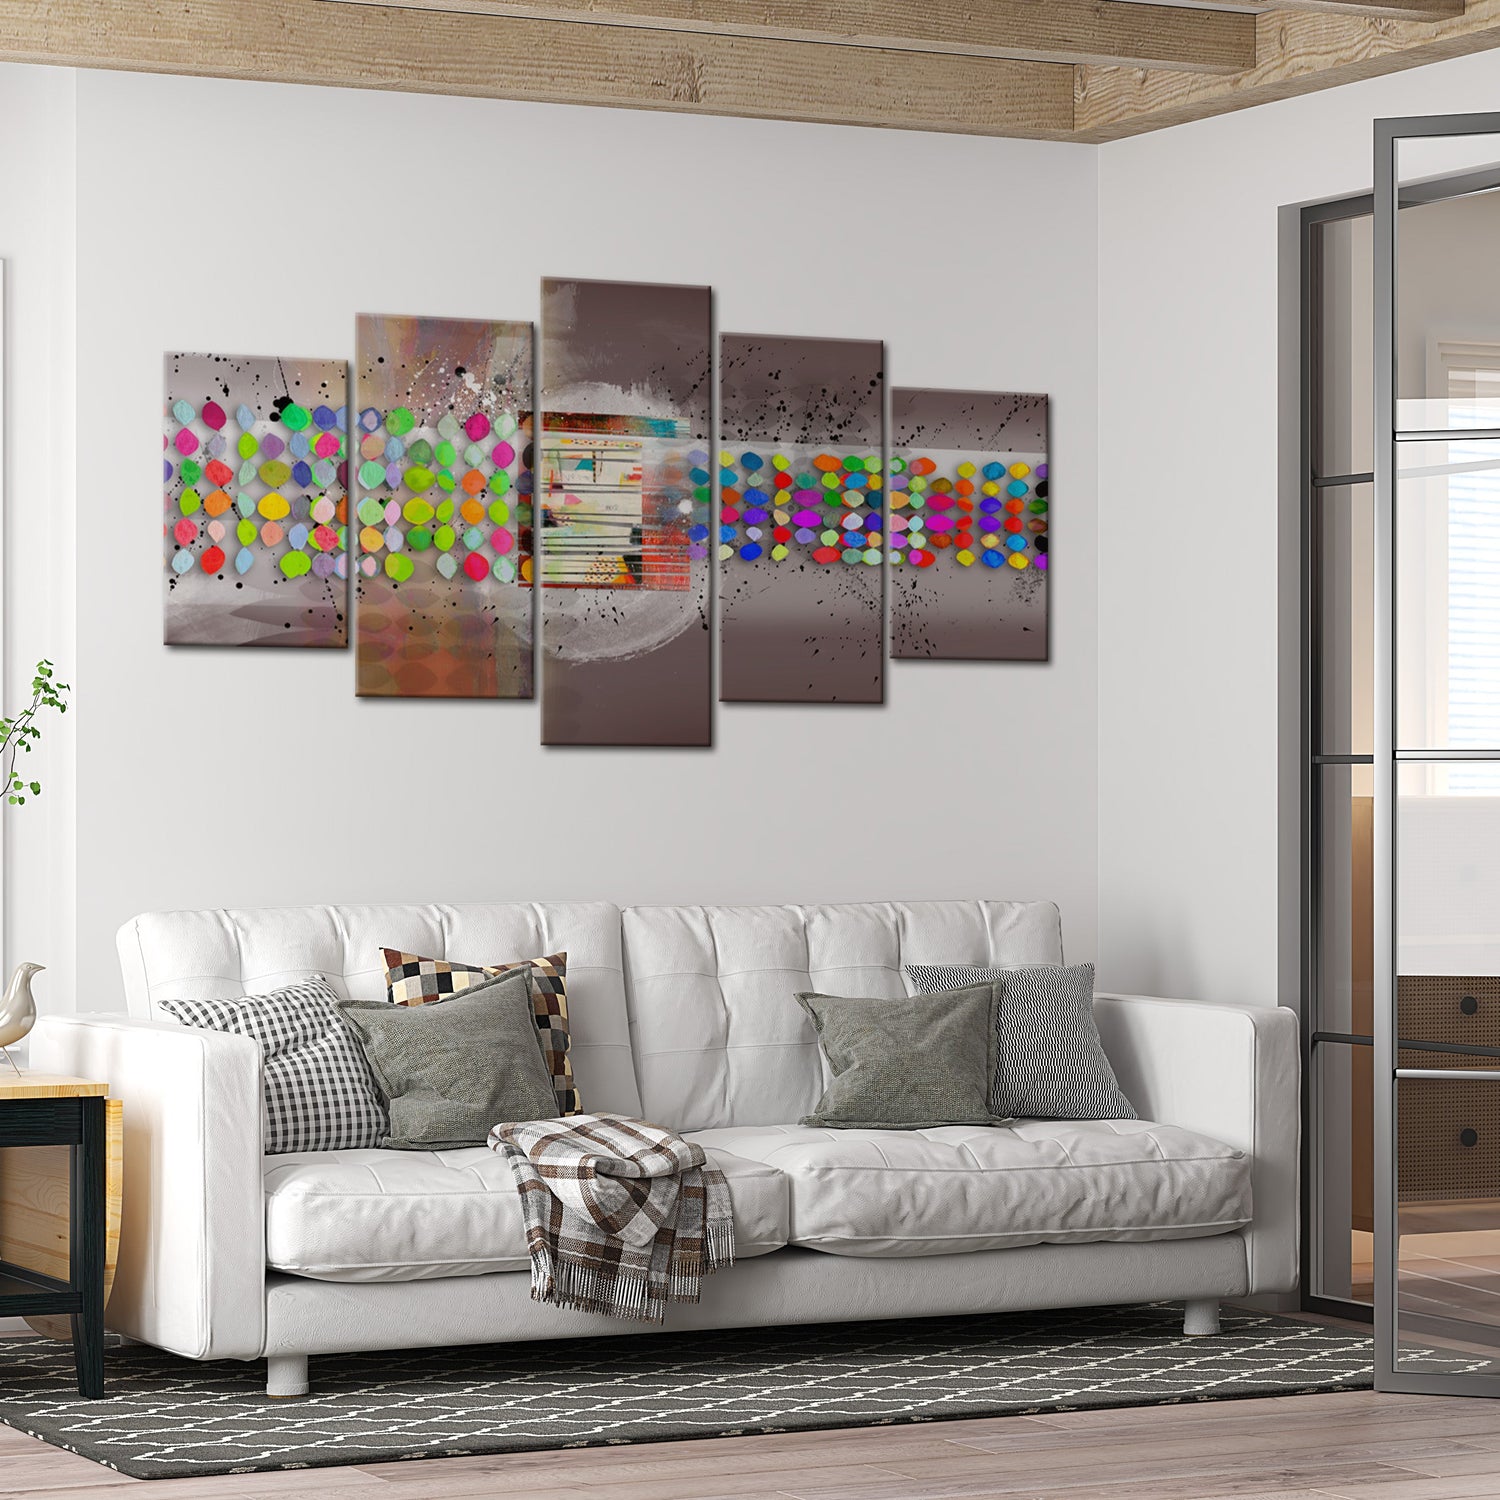 Abstract Canvas Wall Art - Abstract Polka Dots - 5 Pieces